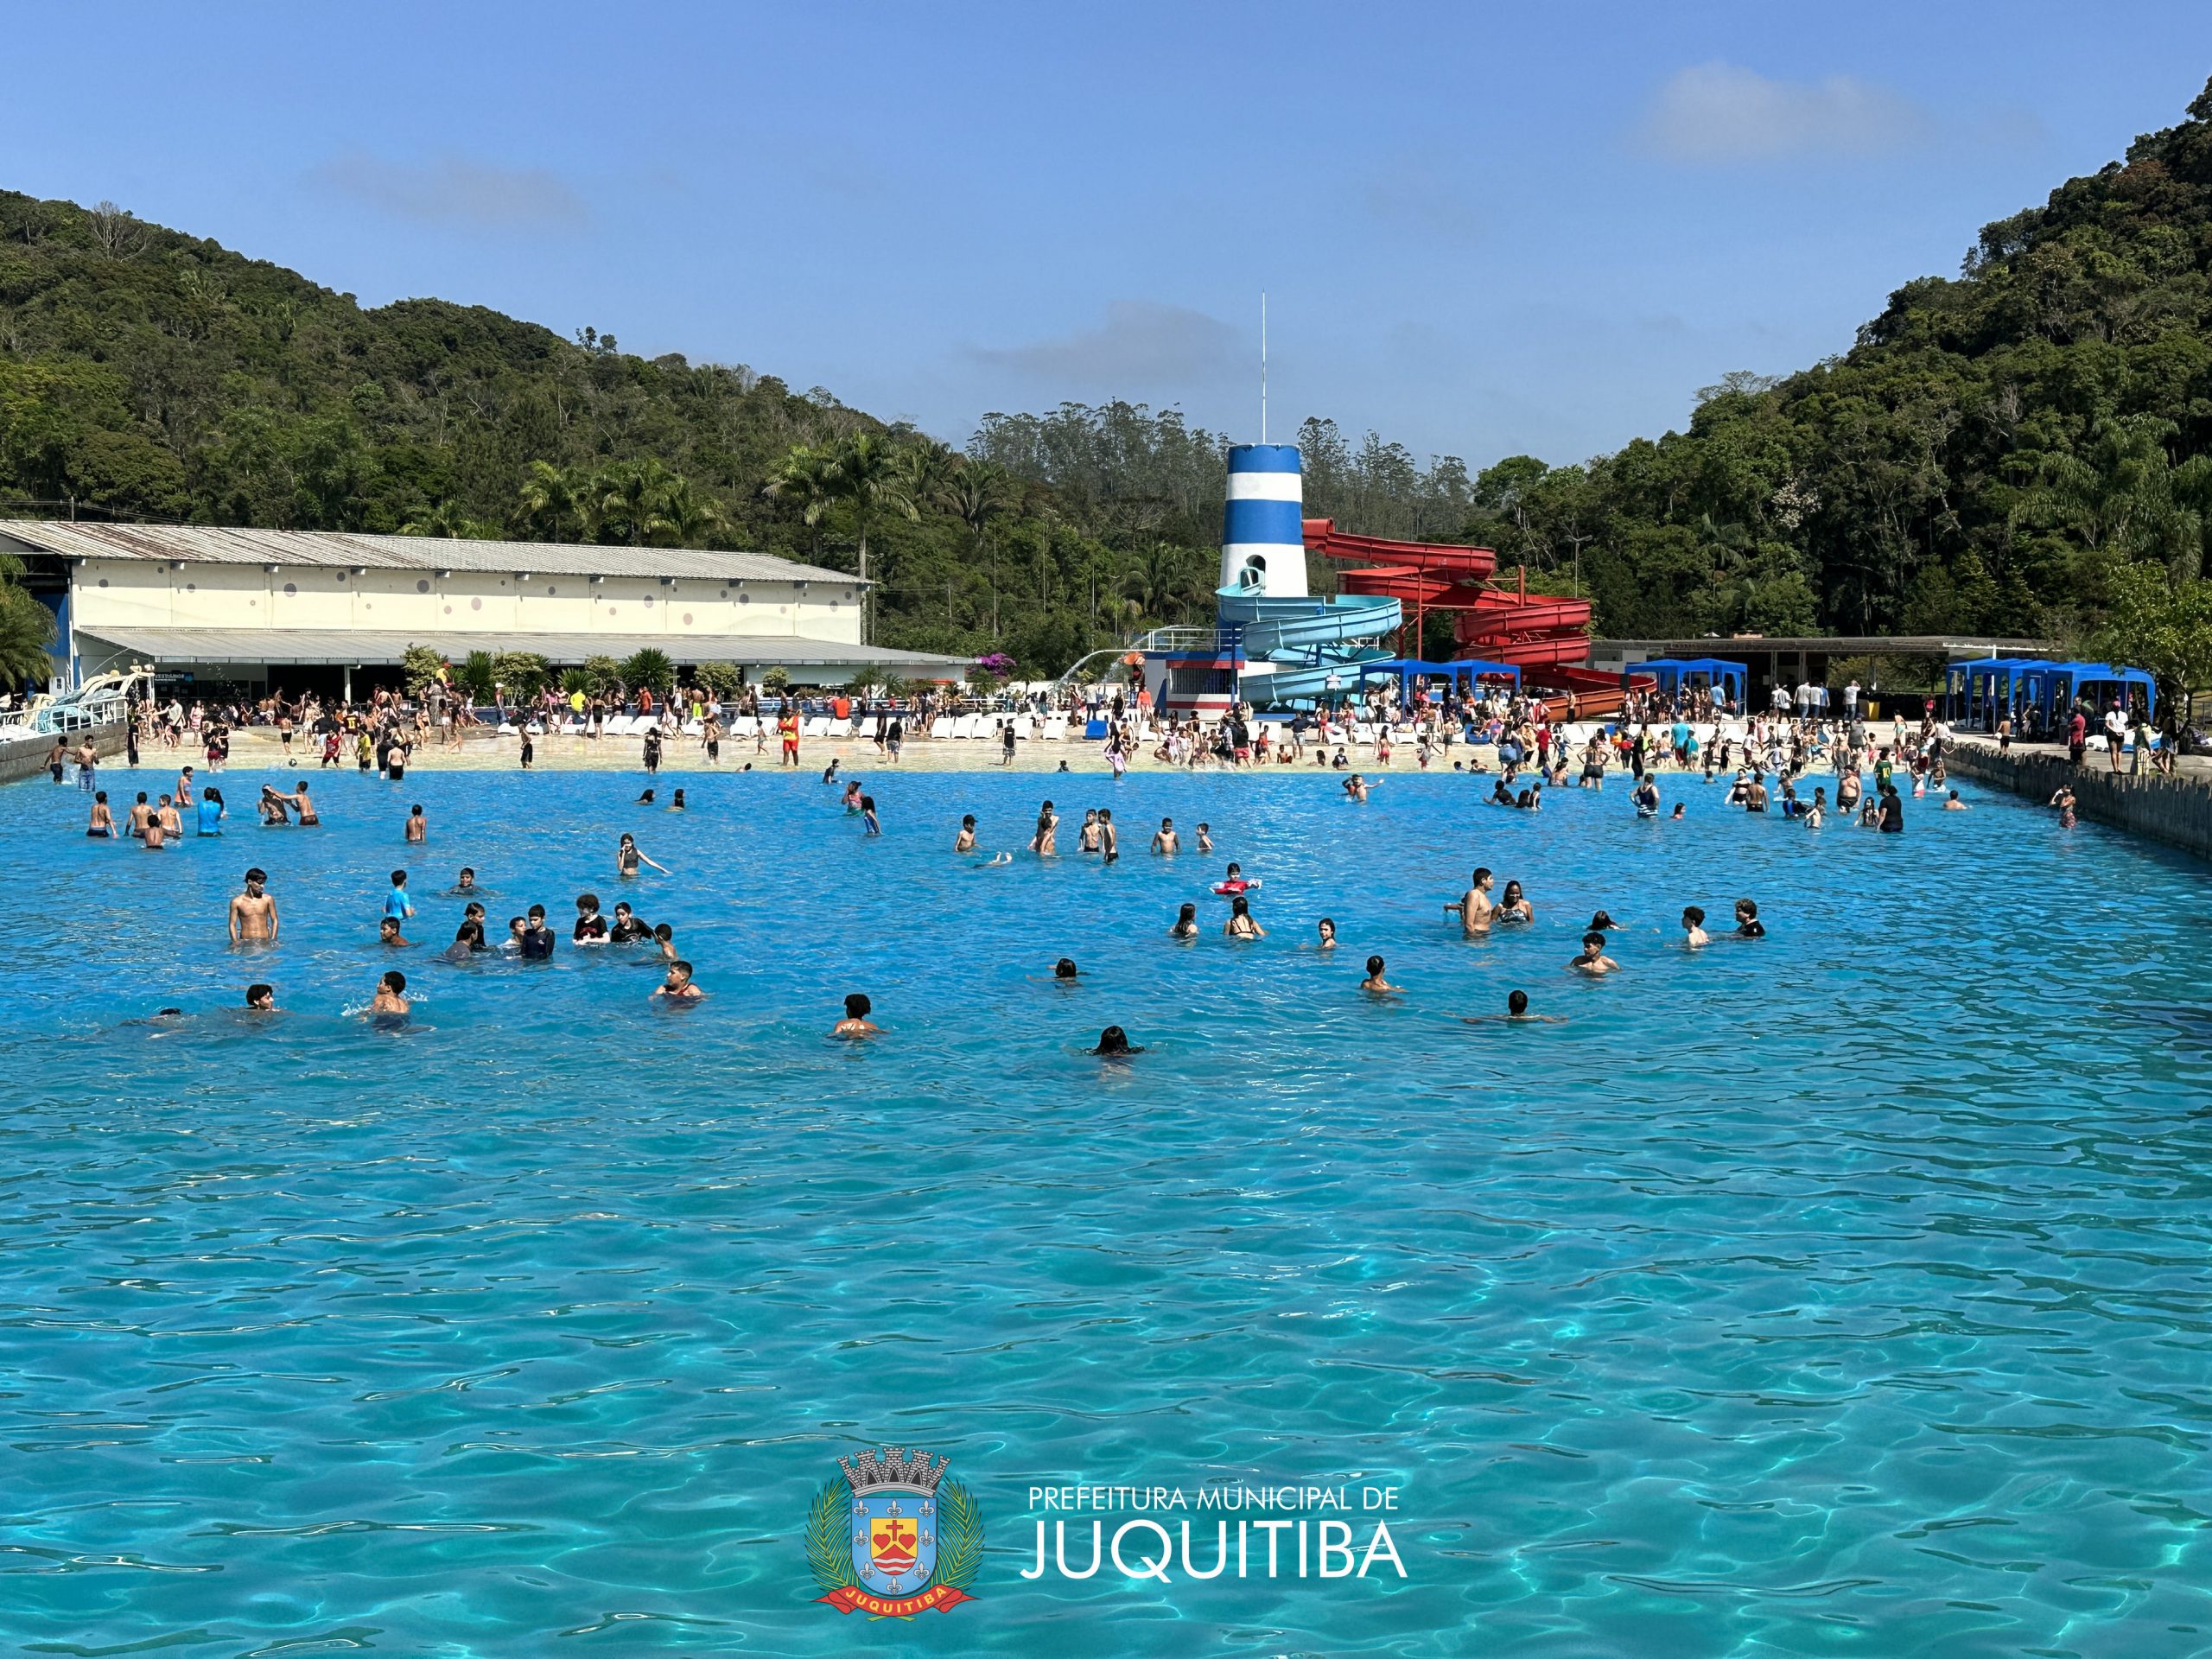 Viva Parque - Parque Aquático - Juquitiba - SP - www.juquitiba.tur.br